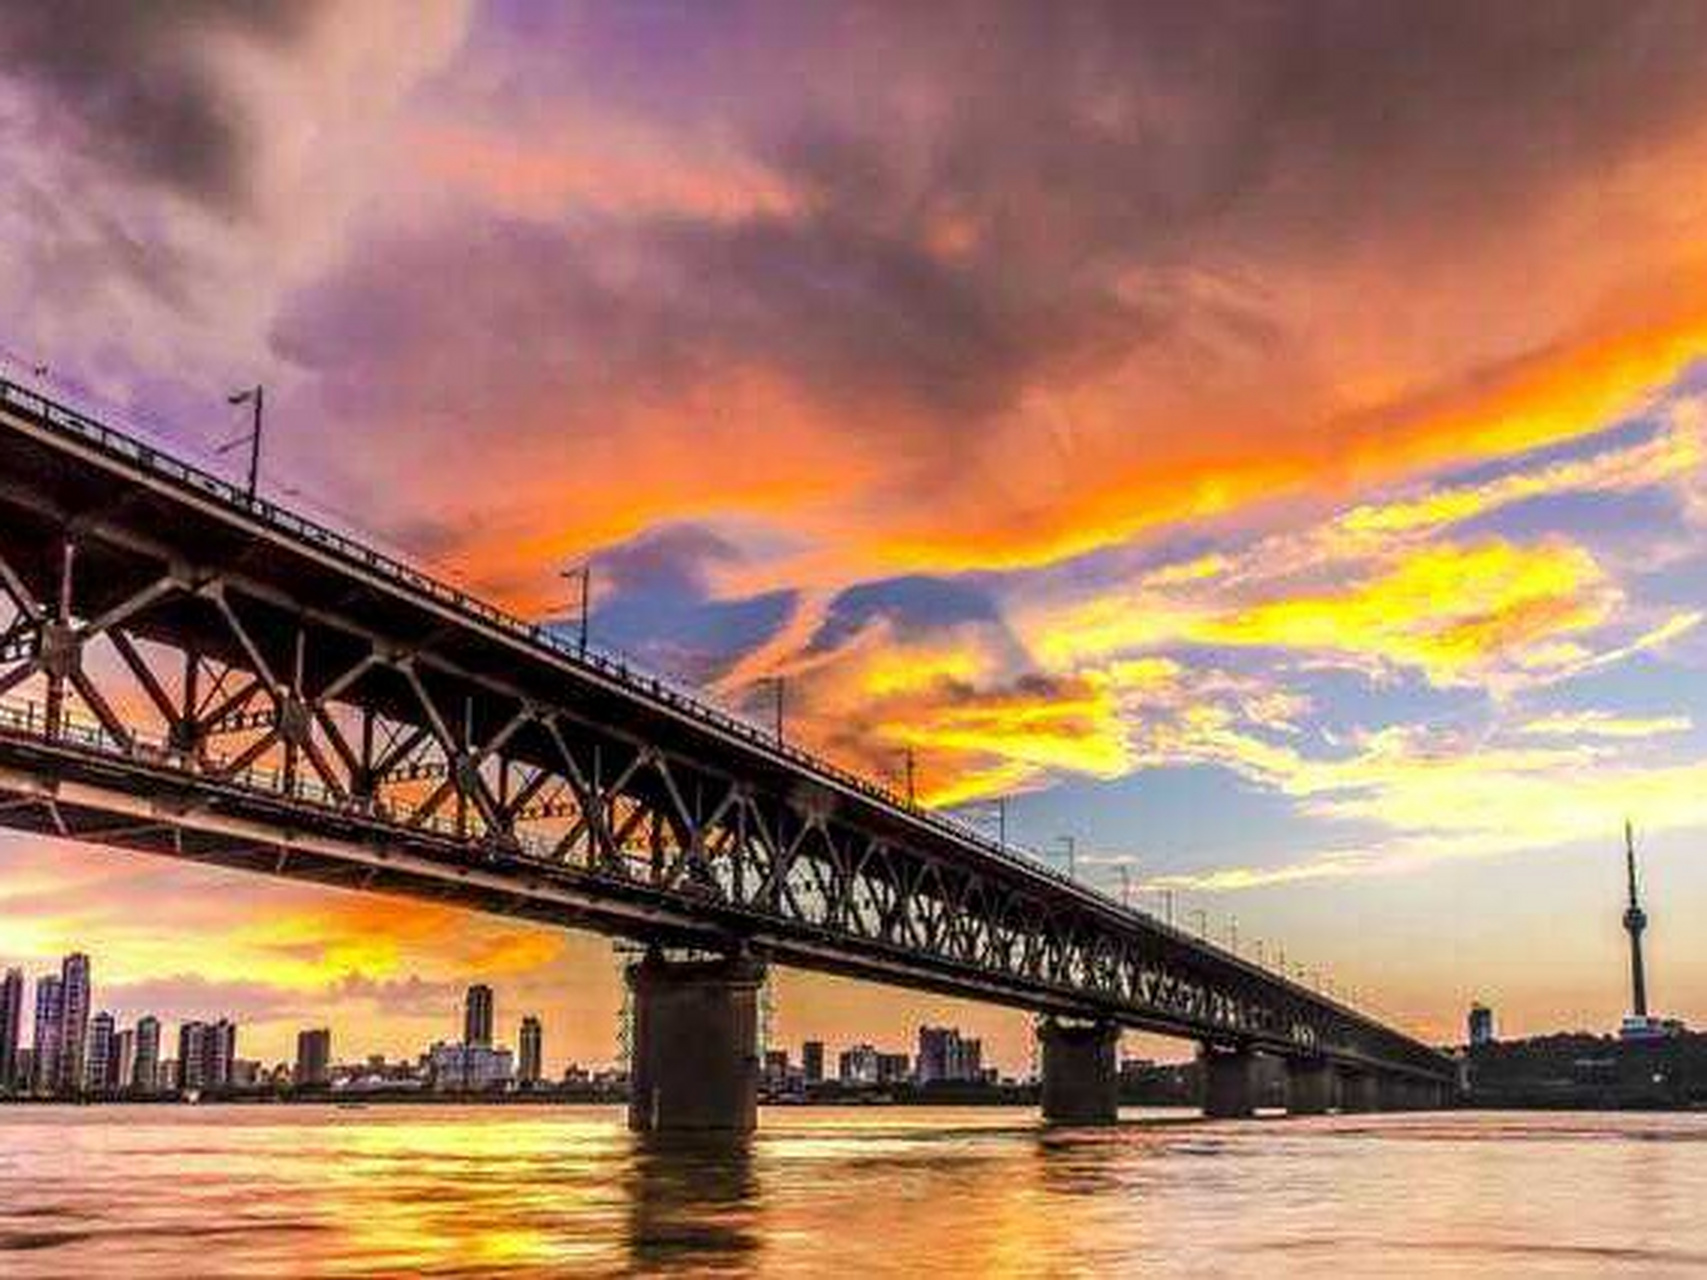 在夕阳下,武汉长江大桥仿佛披上了一件金黄的纱衣,显得格外美丽